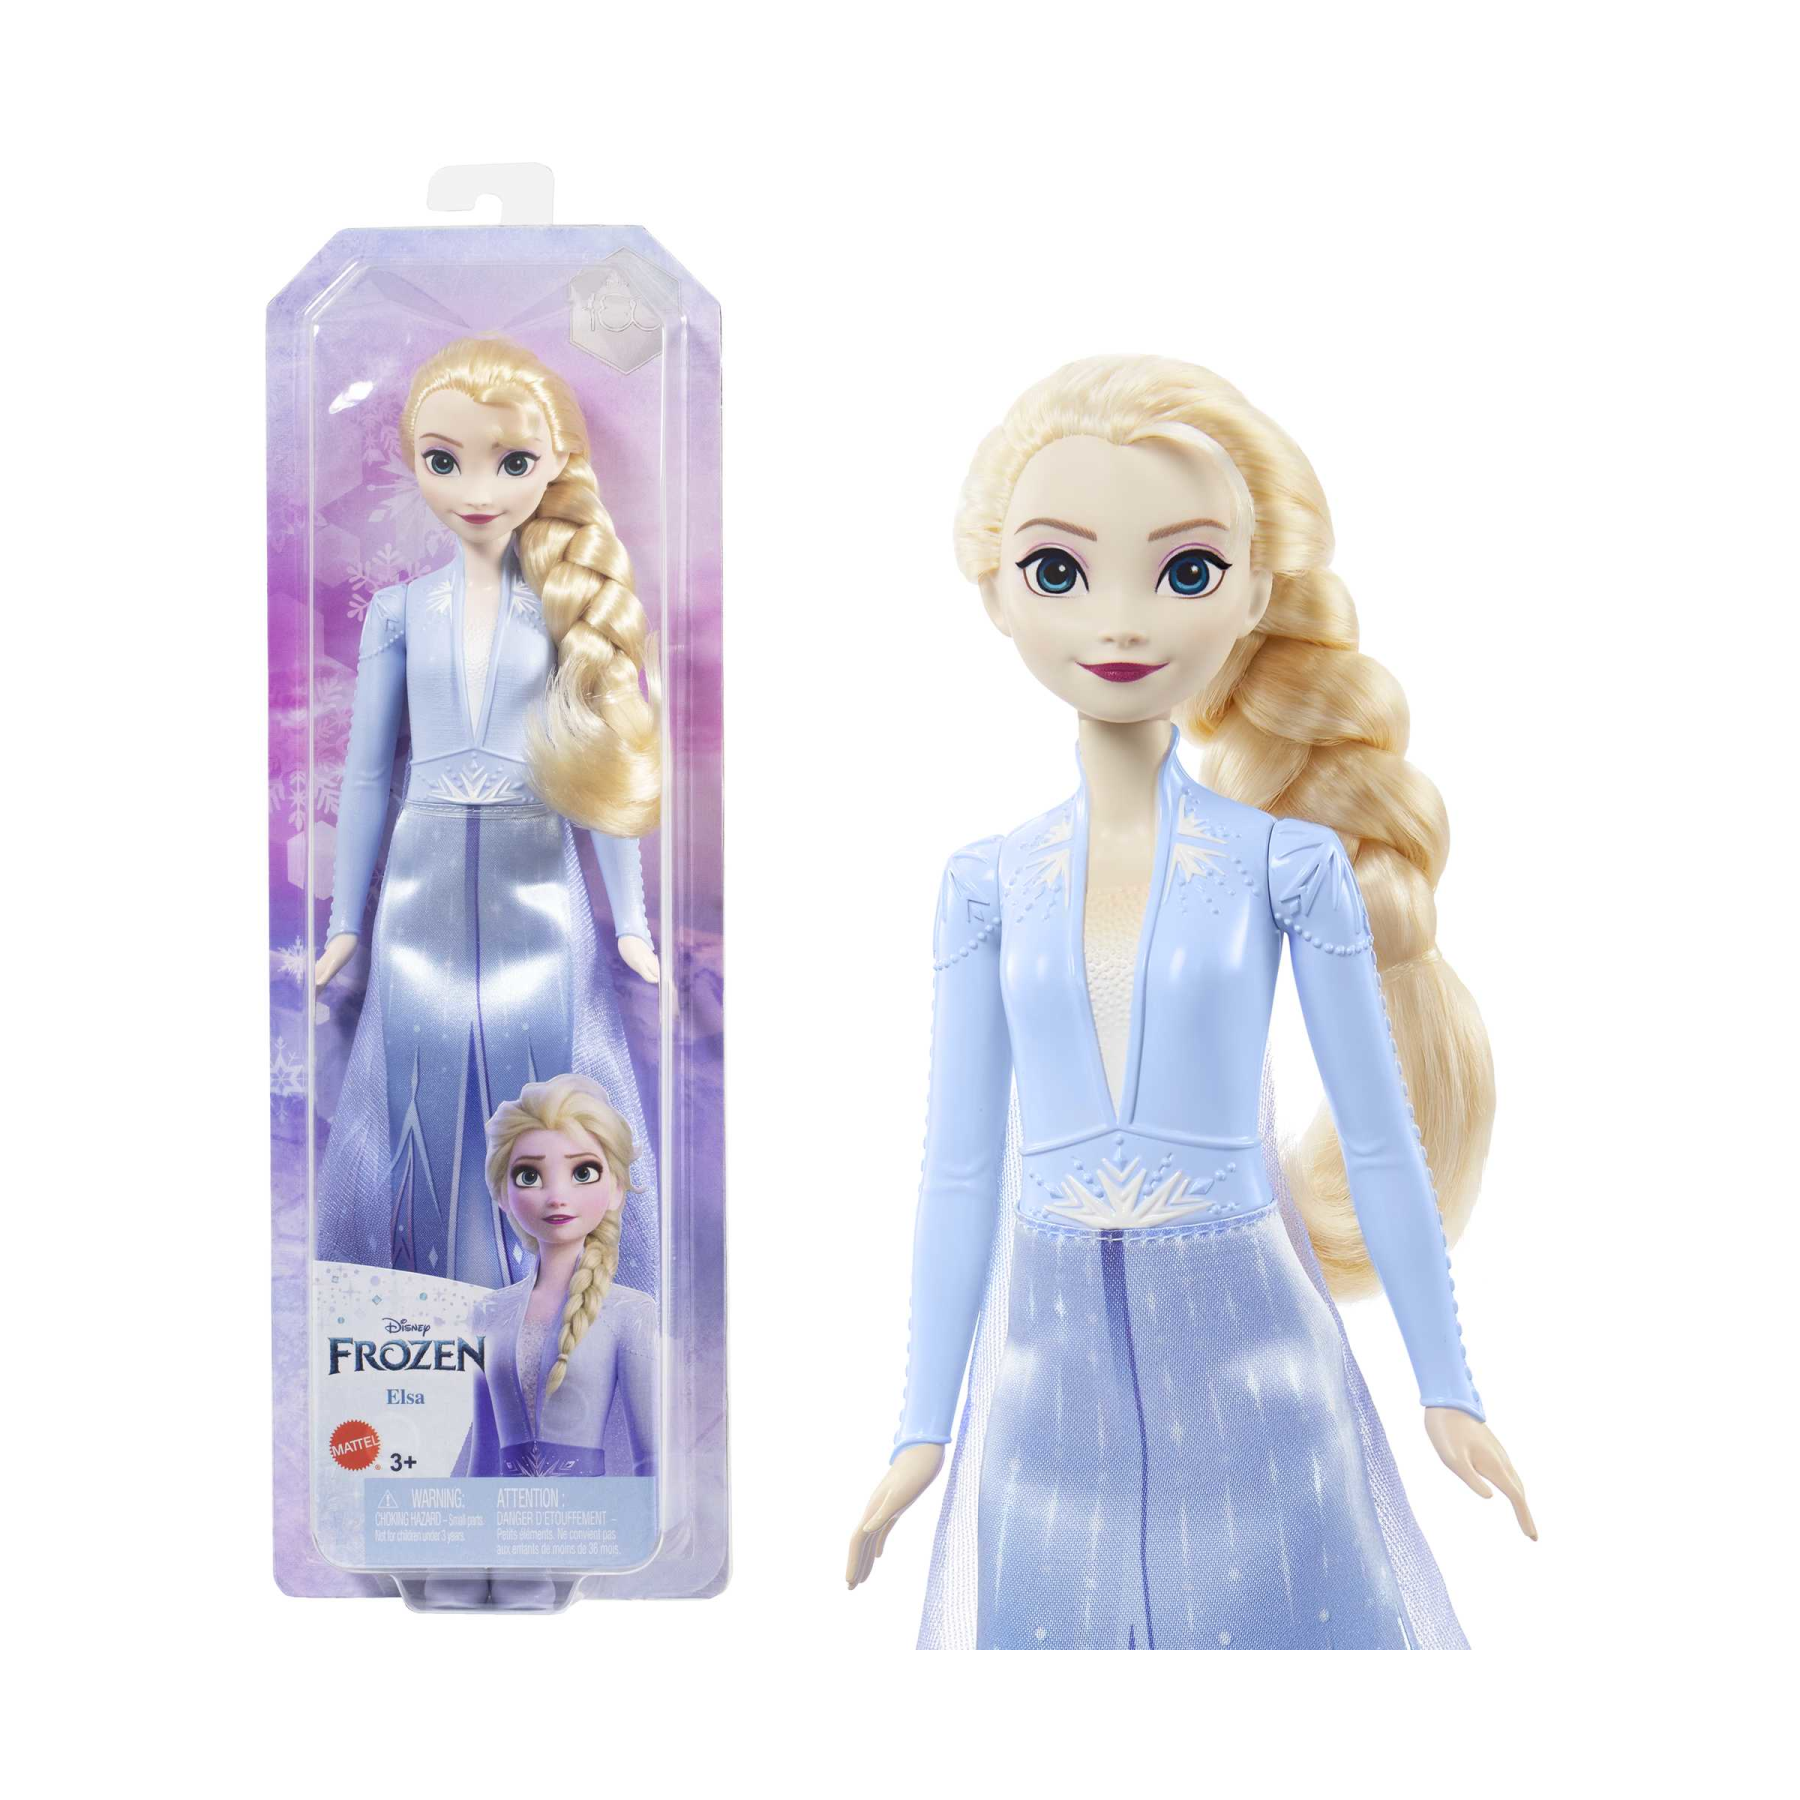 Disney frozen - elsa bambola con abito esclusivo e accessori ispirati ai film disney frozen 2, giocattolo per bambini, 3+ anni, hlw48 - Frozen